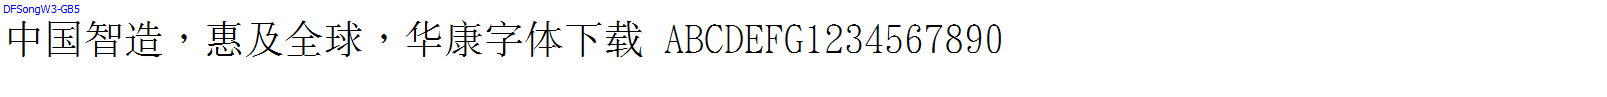 華康字體DFSongW3-GB5.ttc